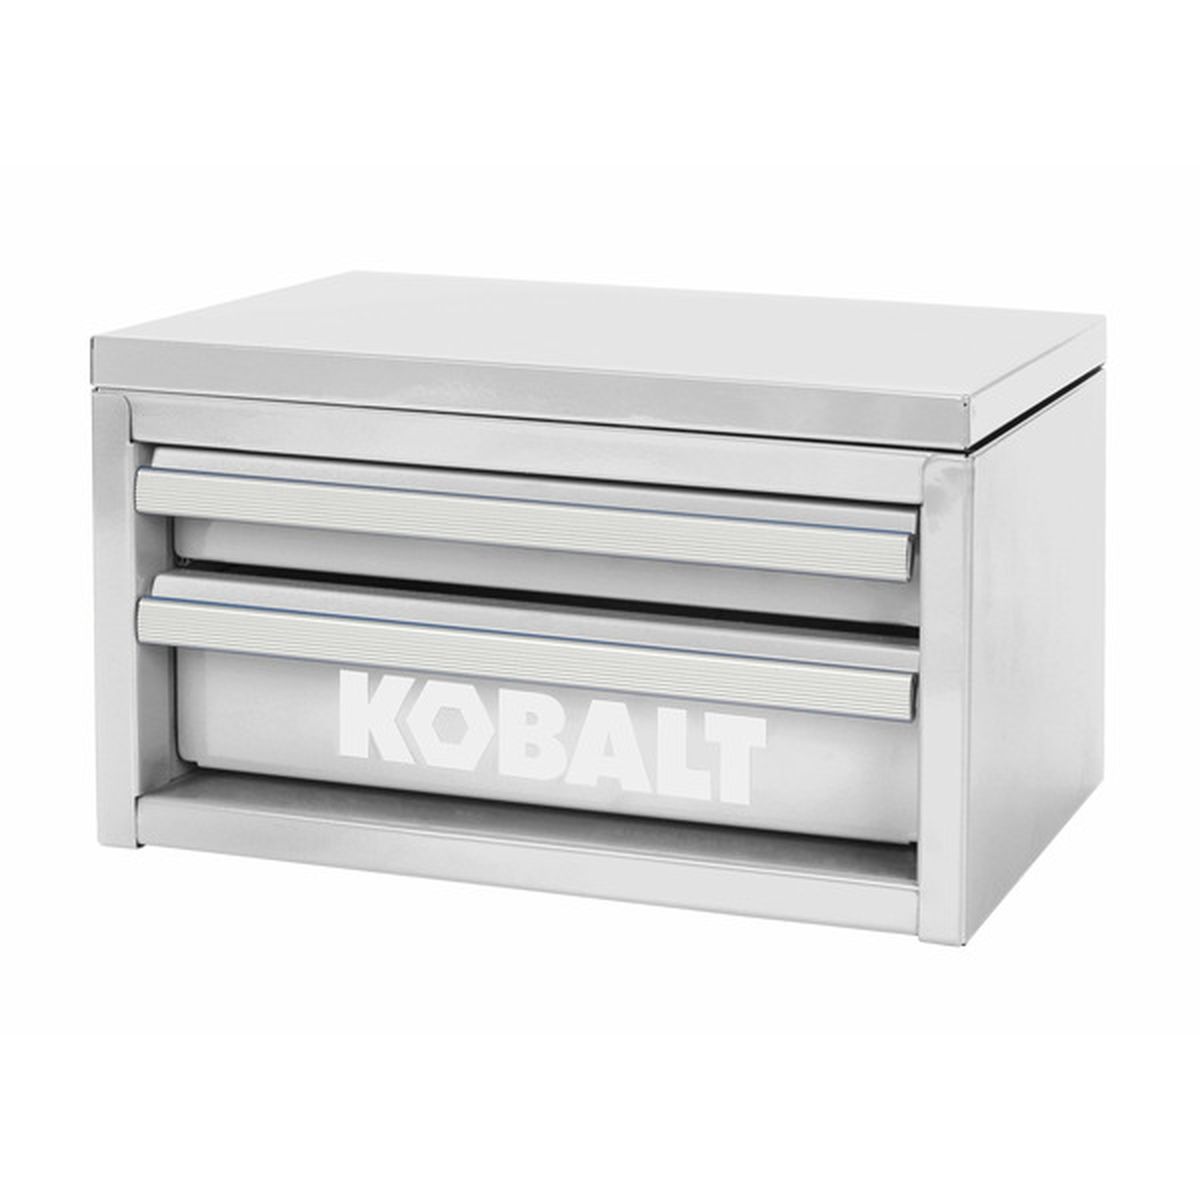 Kobalt Mini Friction 2Drawer Steel Tool Box 54417 White (10.83 in